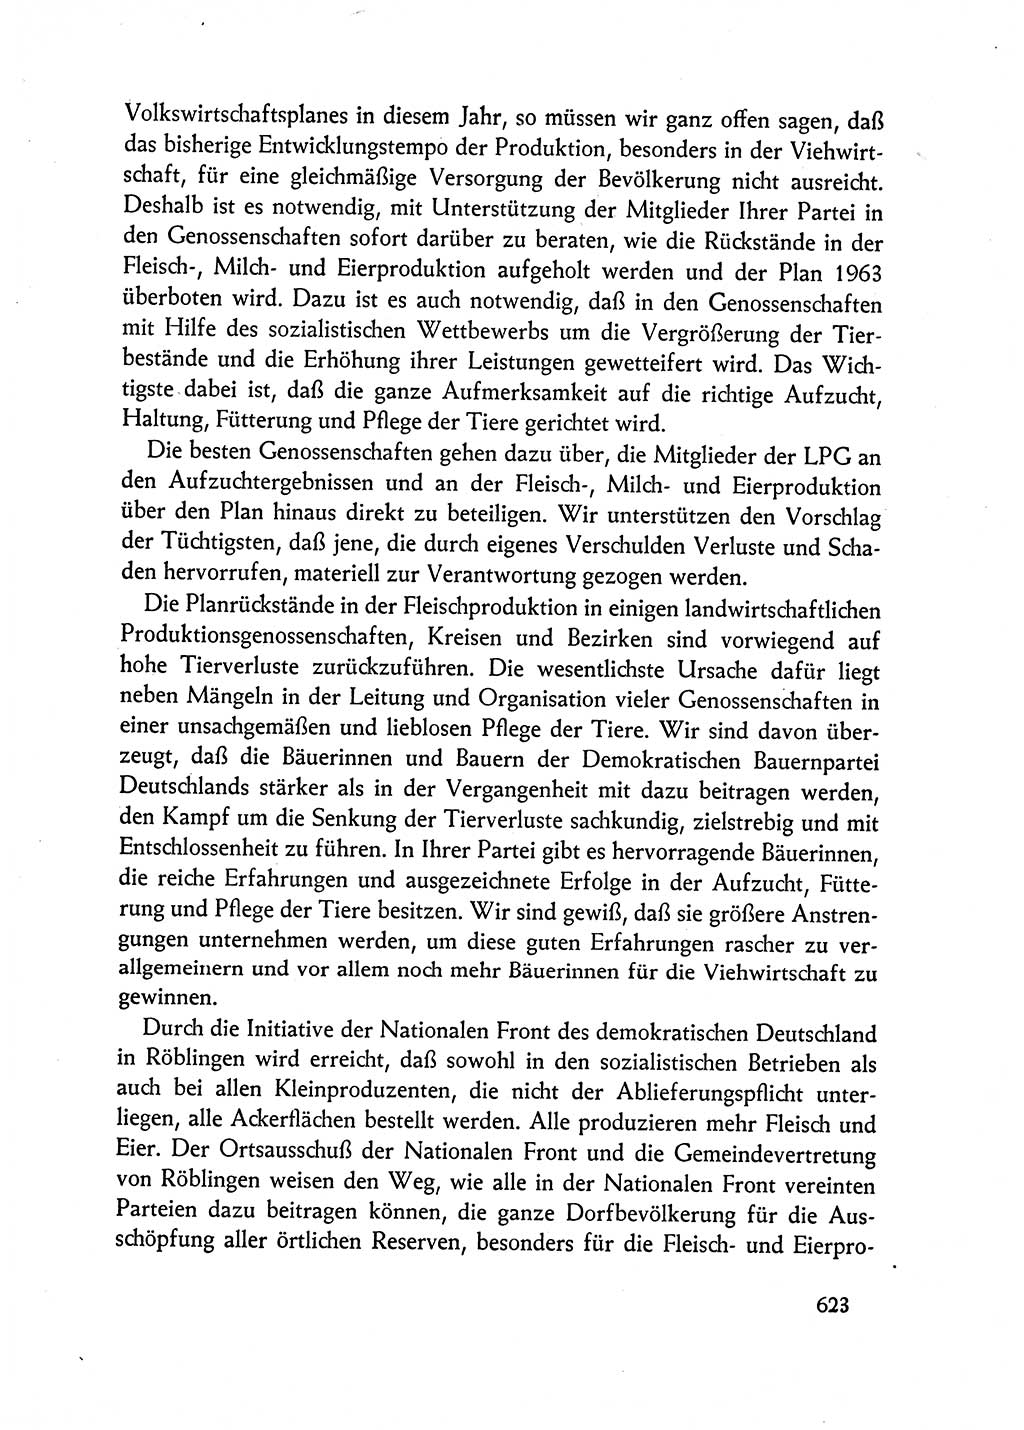 Dokumente der Sozialistischen Einheitspartei Deutschlands (SED) [Deutsche Demokratische Republik (DDR)] 1962-1963, Seite 623 (Dok. SED DDR 1962-1963, S. 623)